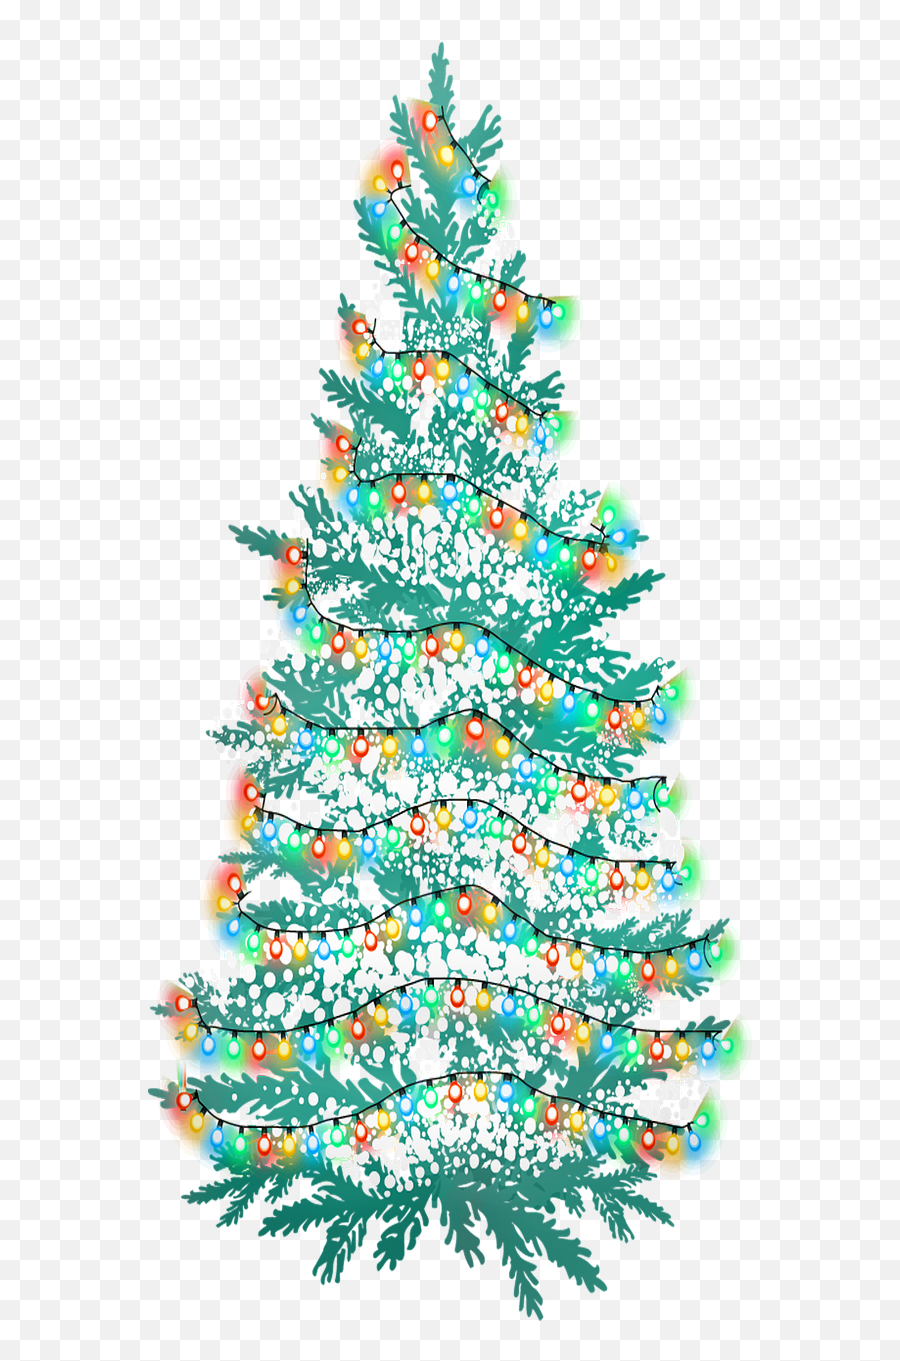 Christmas Tree Snow Lights - Free Image On Pixabay Png,Snow Tree Png